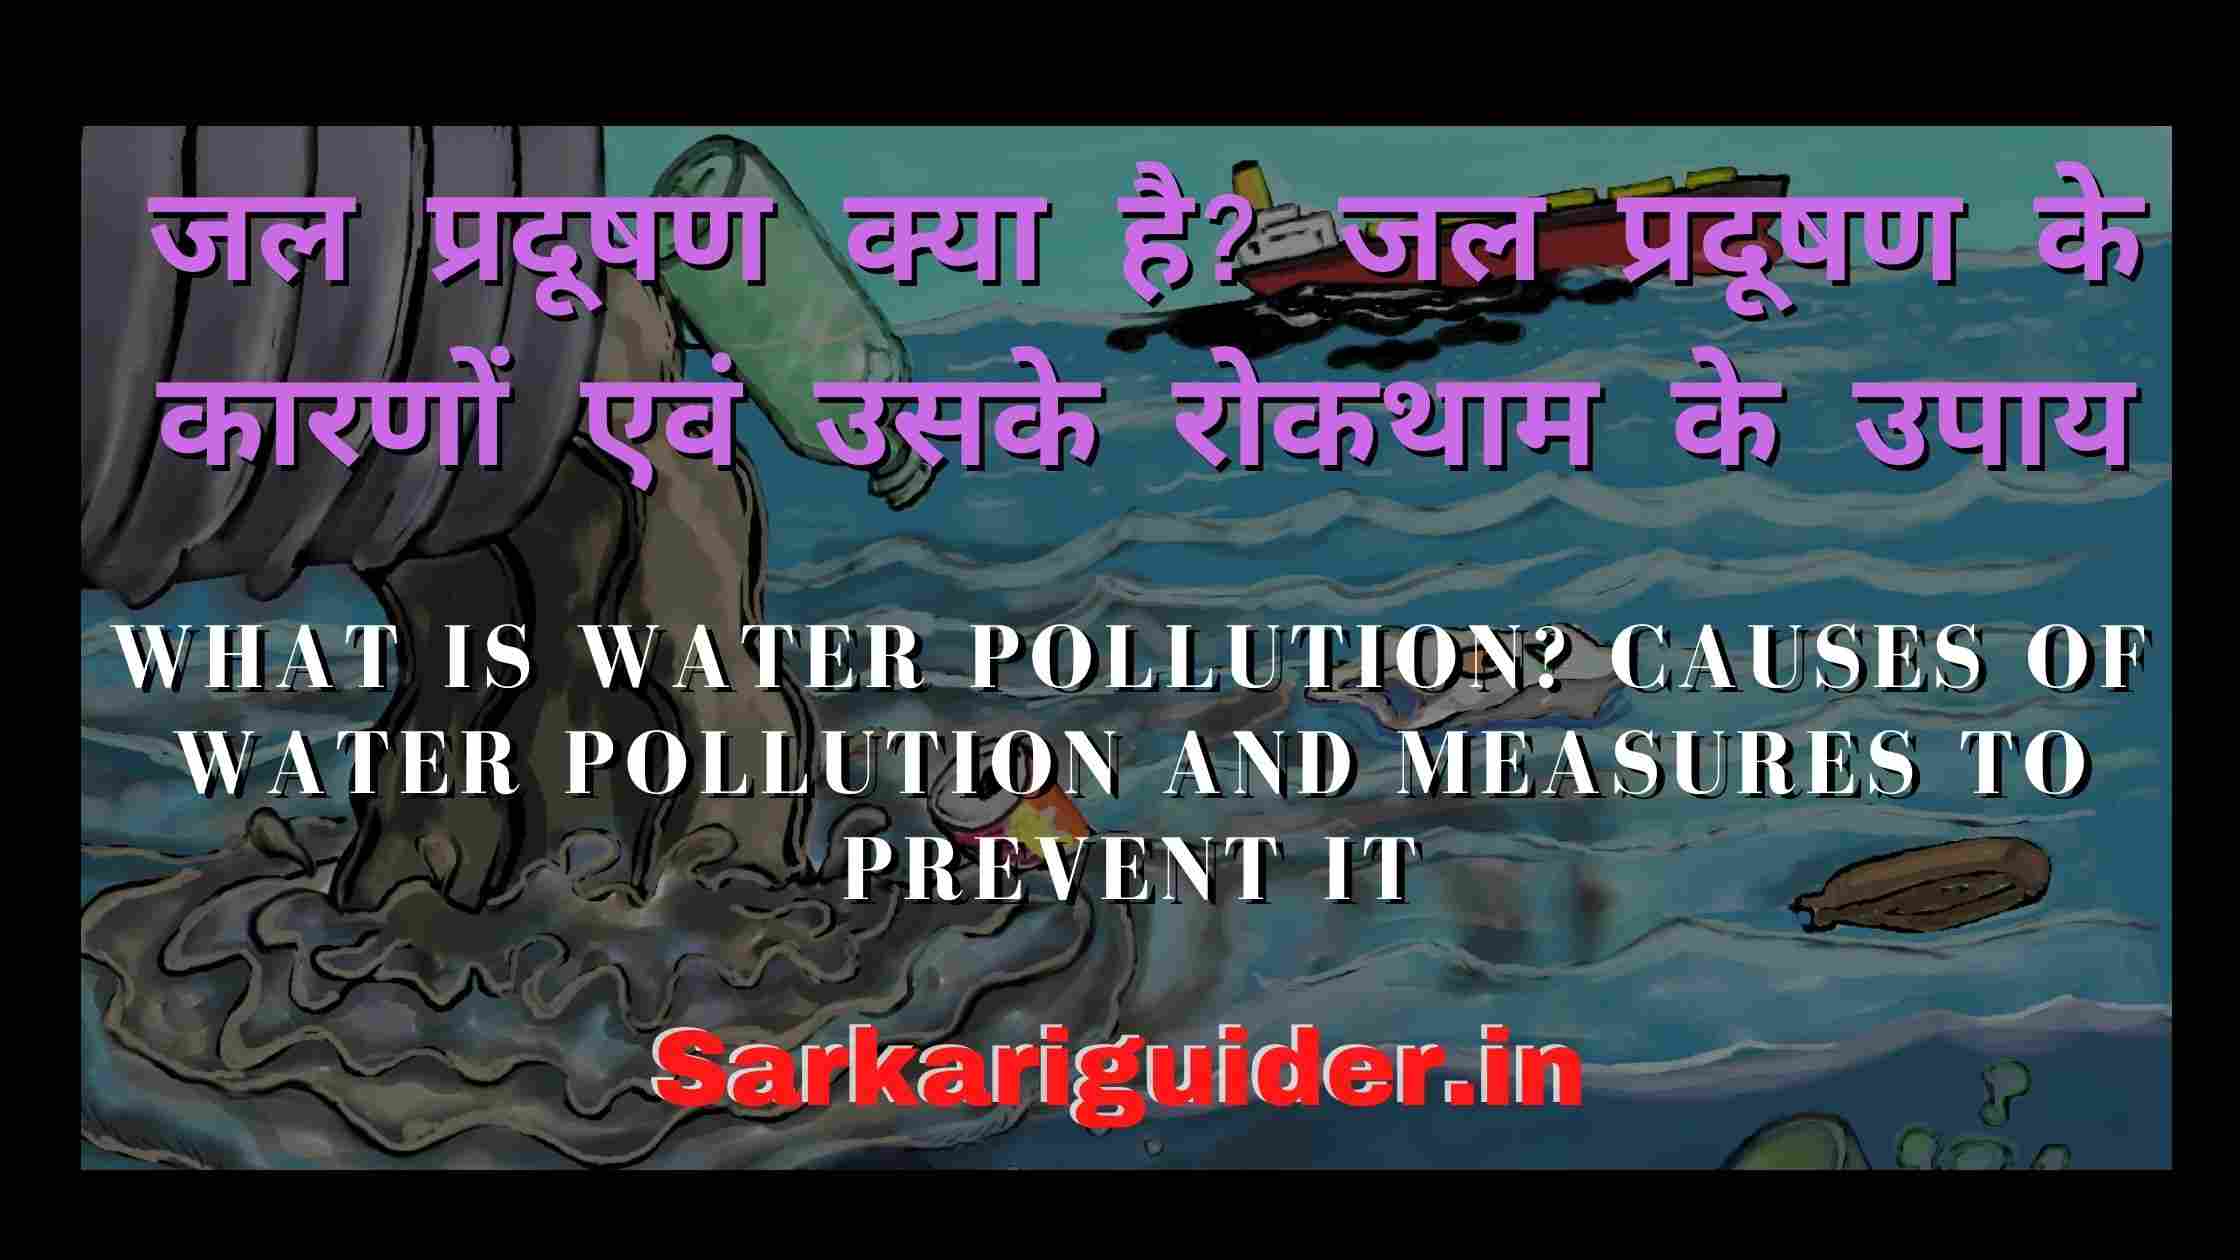 जल प्रदूषण क्या है? जल प्रदूषण के कारणों एवं उसके रोकथाम के उपाय